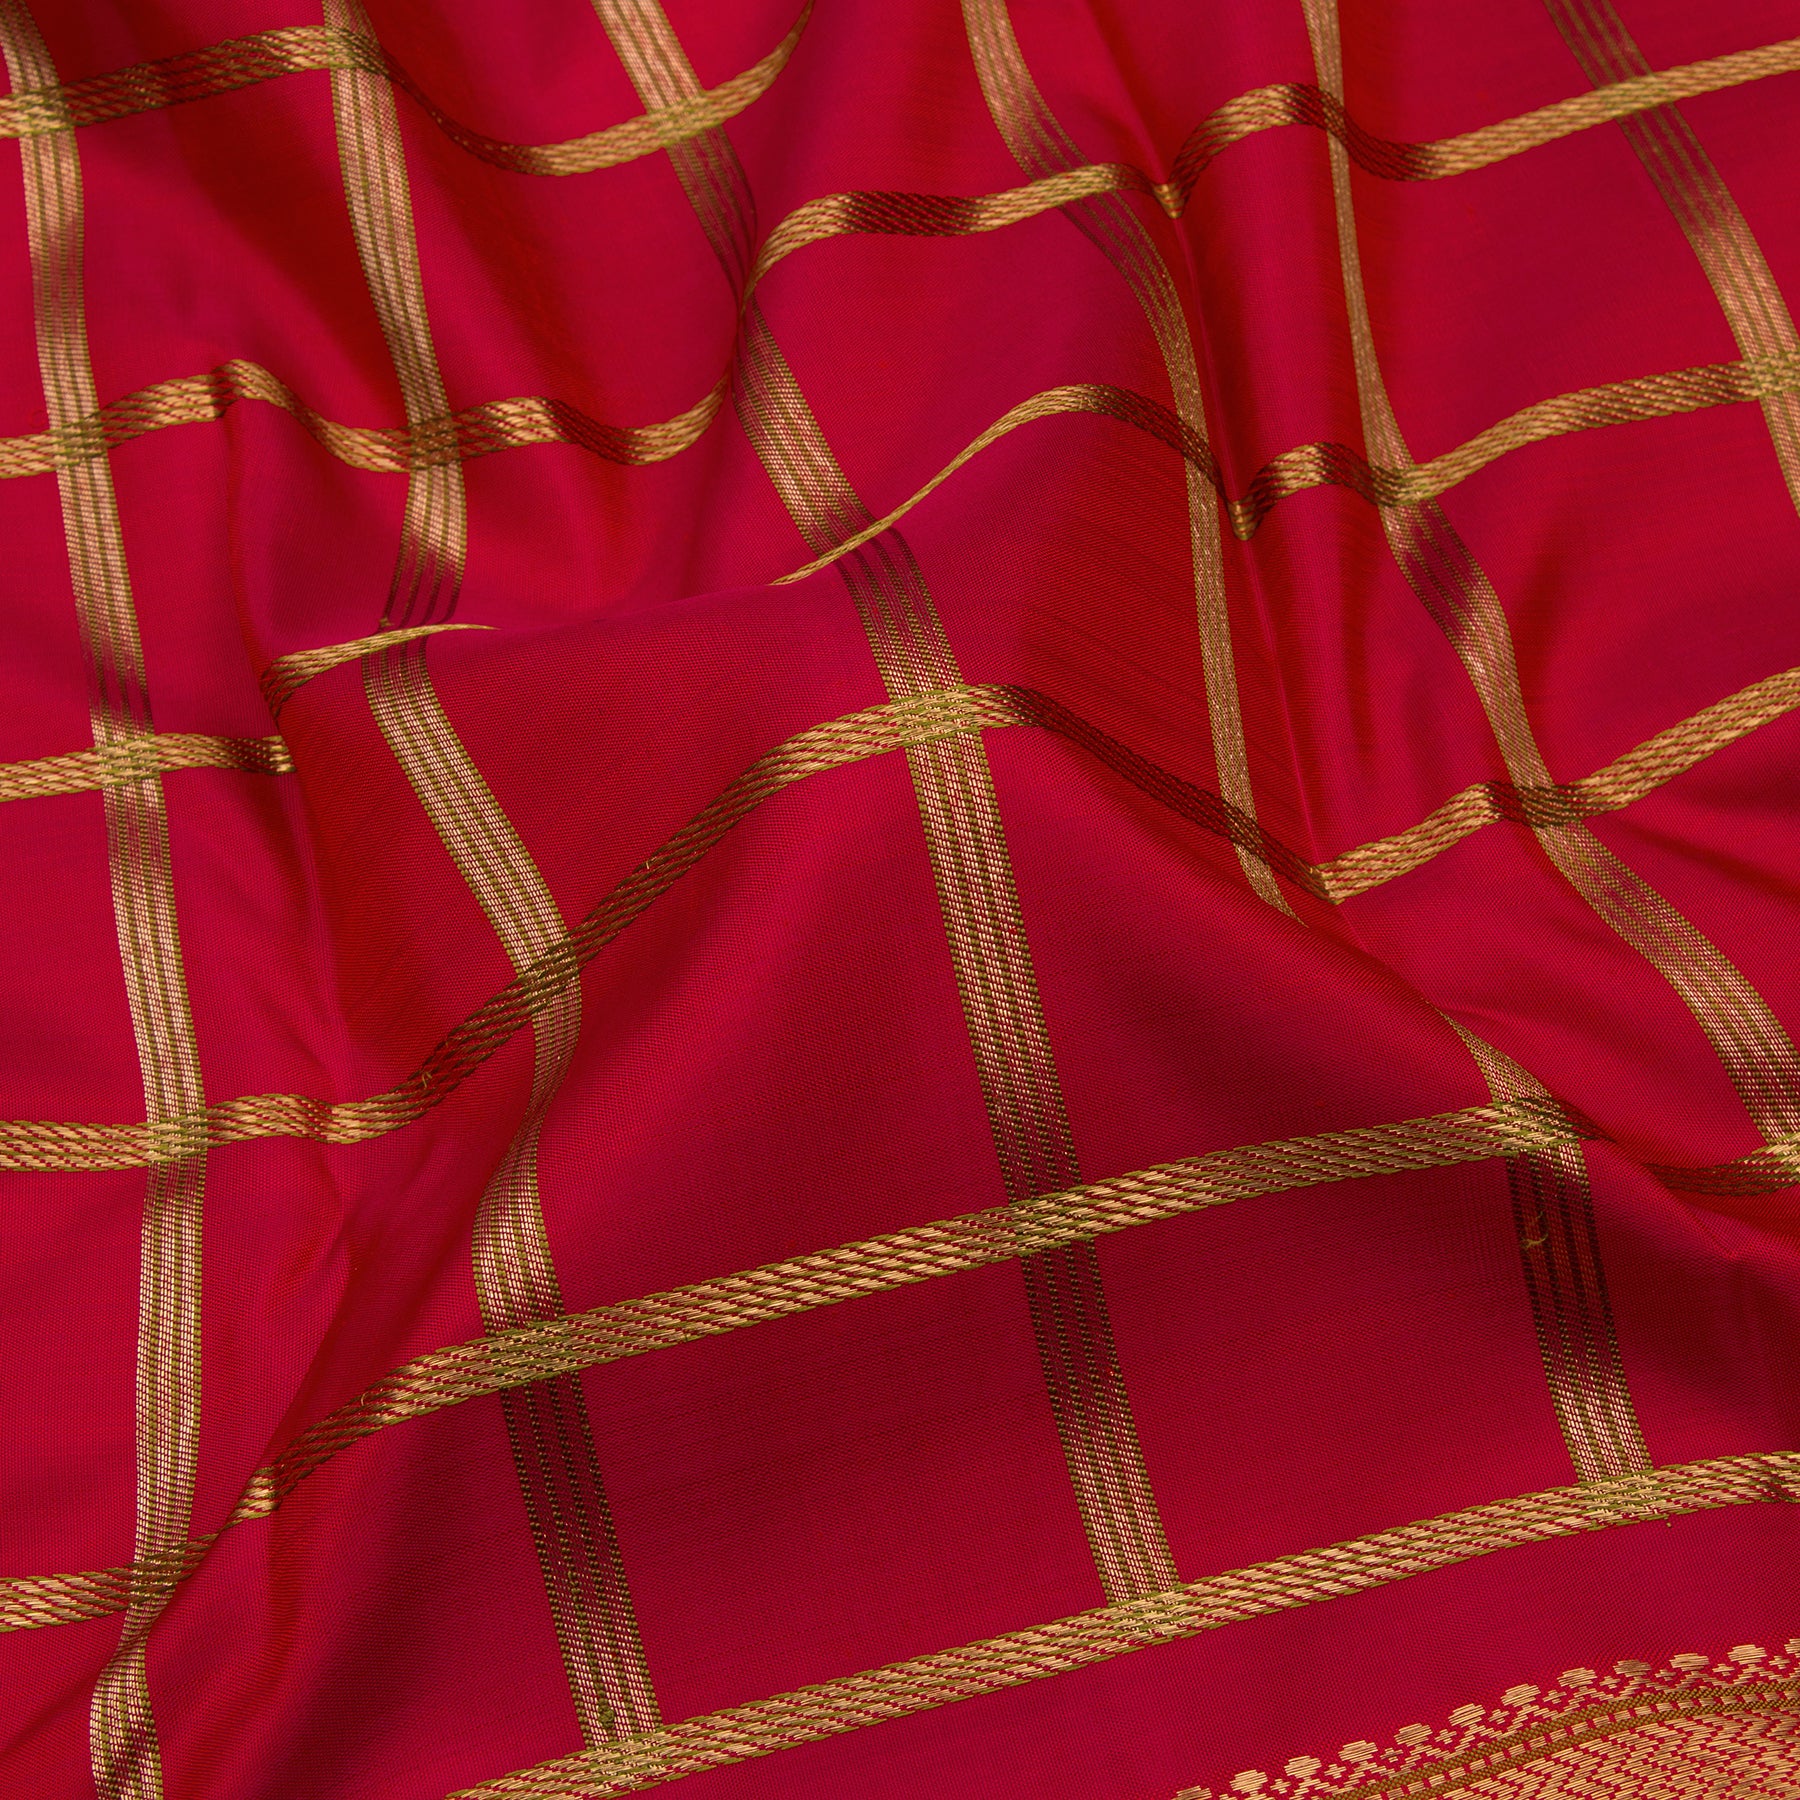 Kanakavalli Kanjivaram Silk Sari 21-040-HS001-03186 - Fabric View